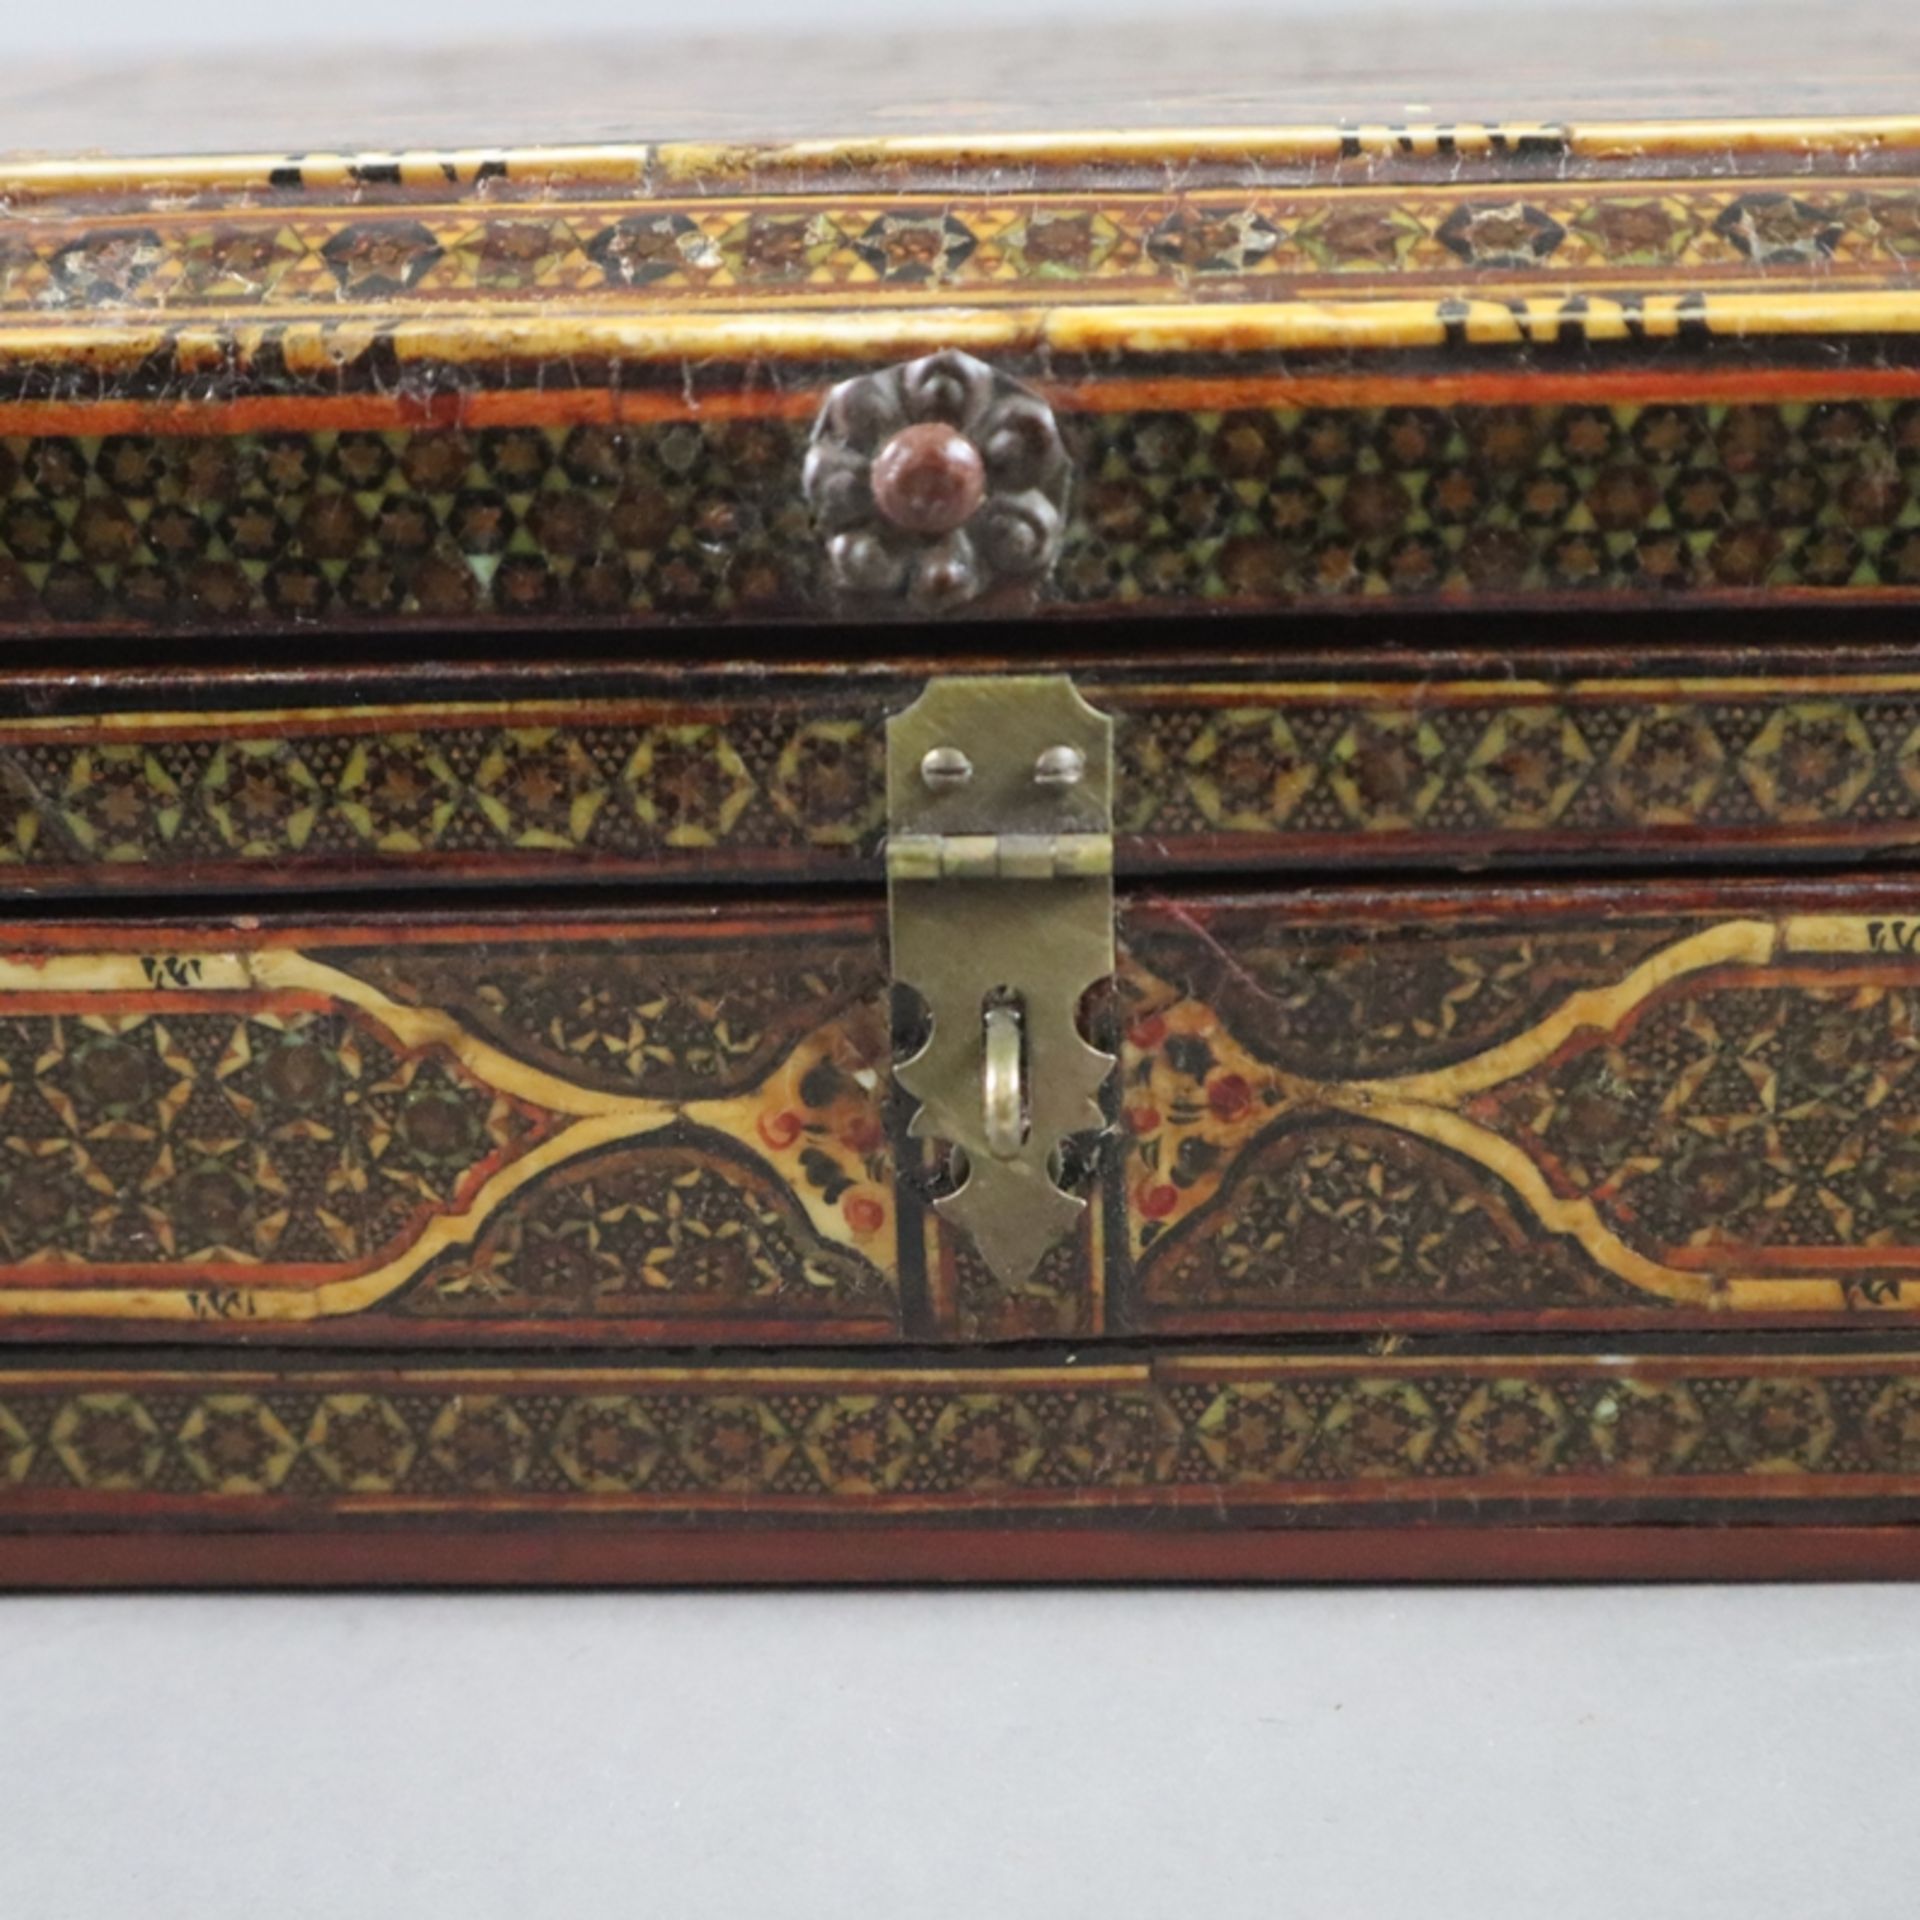 Spiegelschatulle - Persien, große Holzkassette mit durch Ketten gesichertem Scharnierdeckel, intars - Image 8 of 8